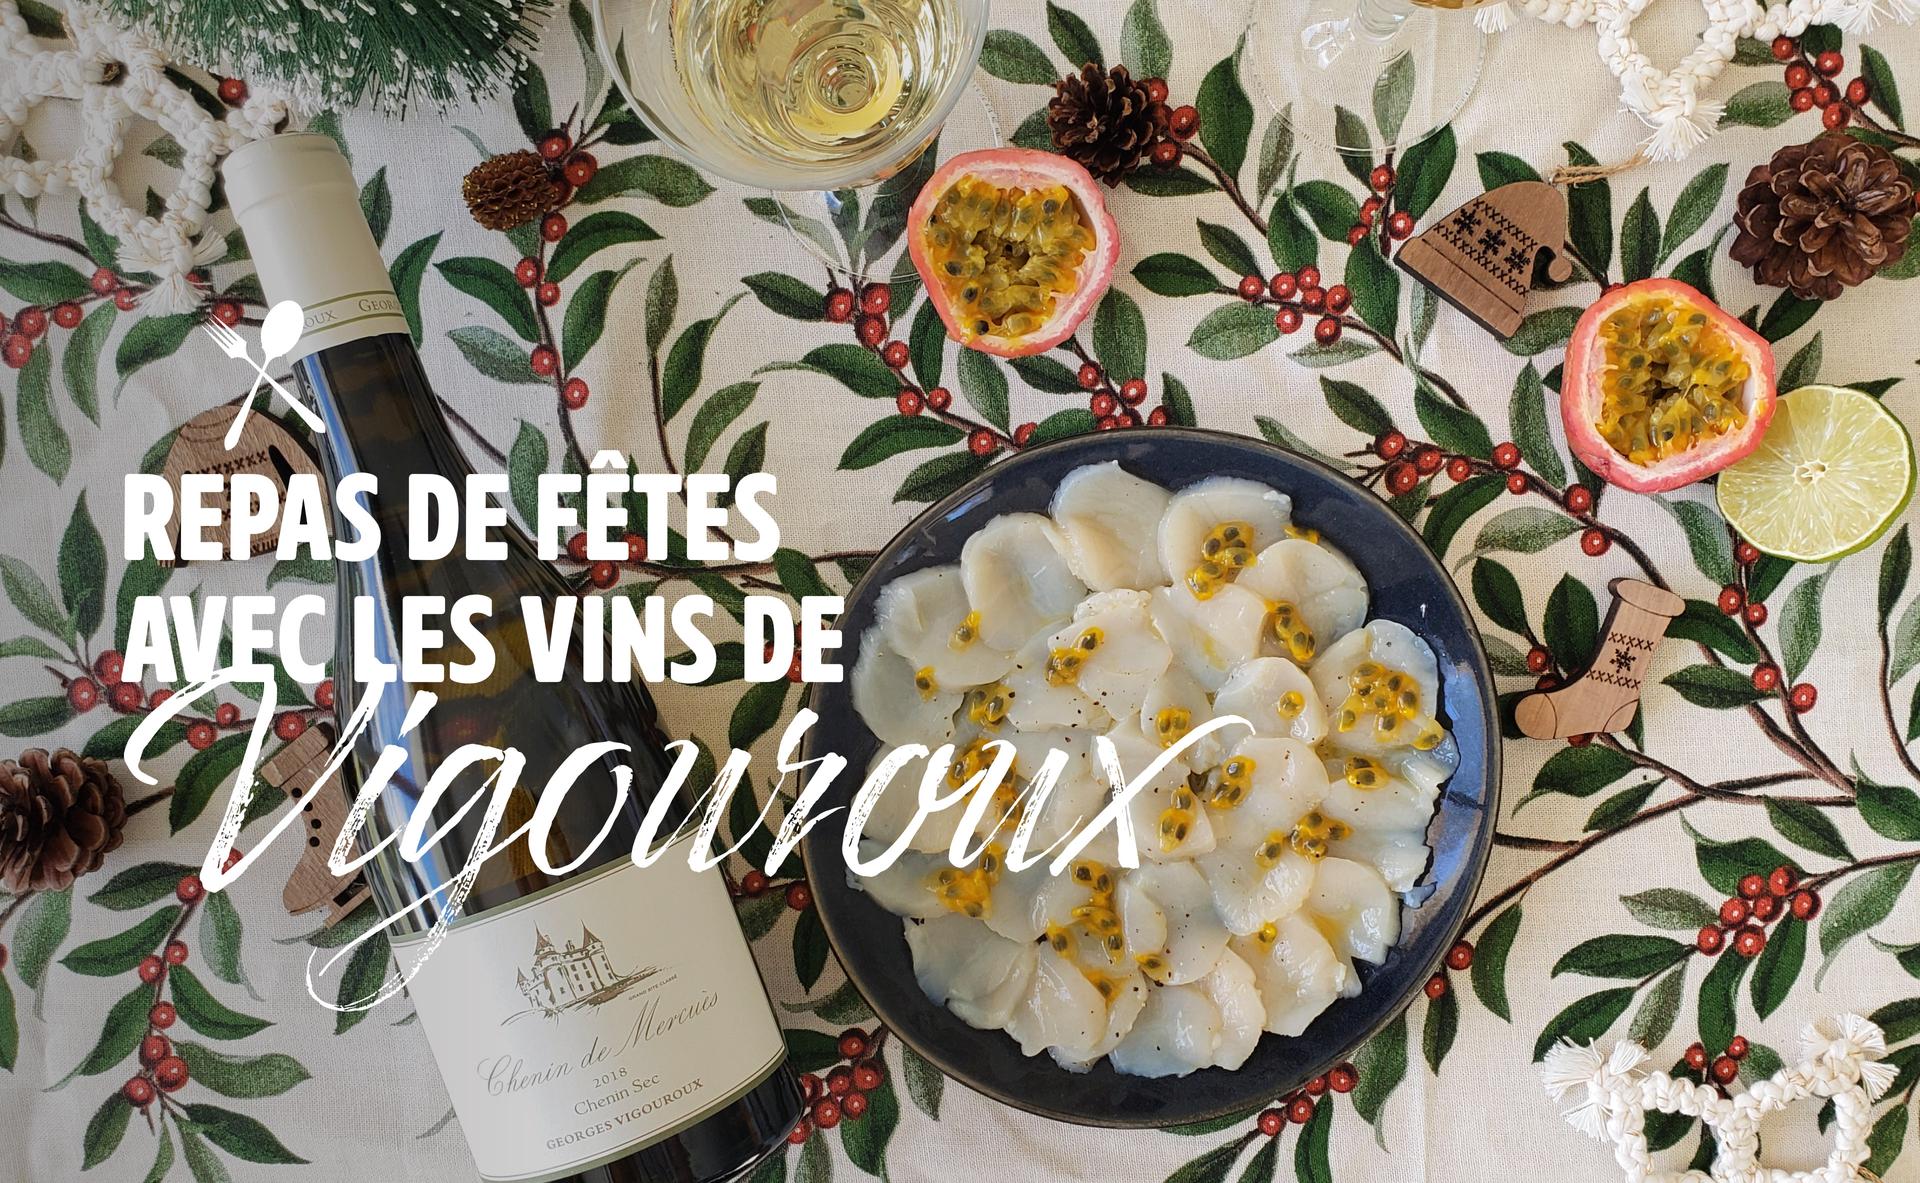 Repas de fêtes avec les vins Vigouroux